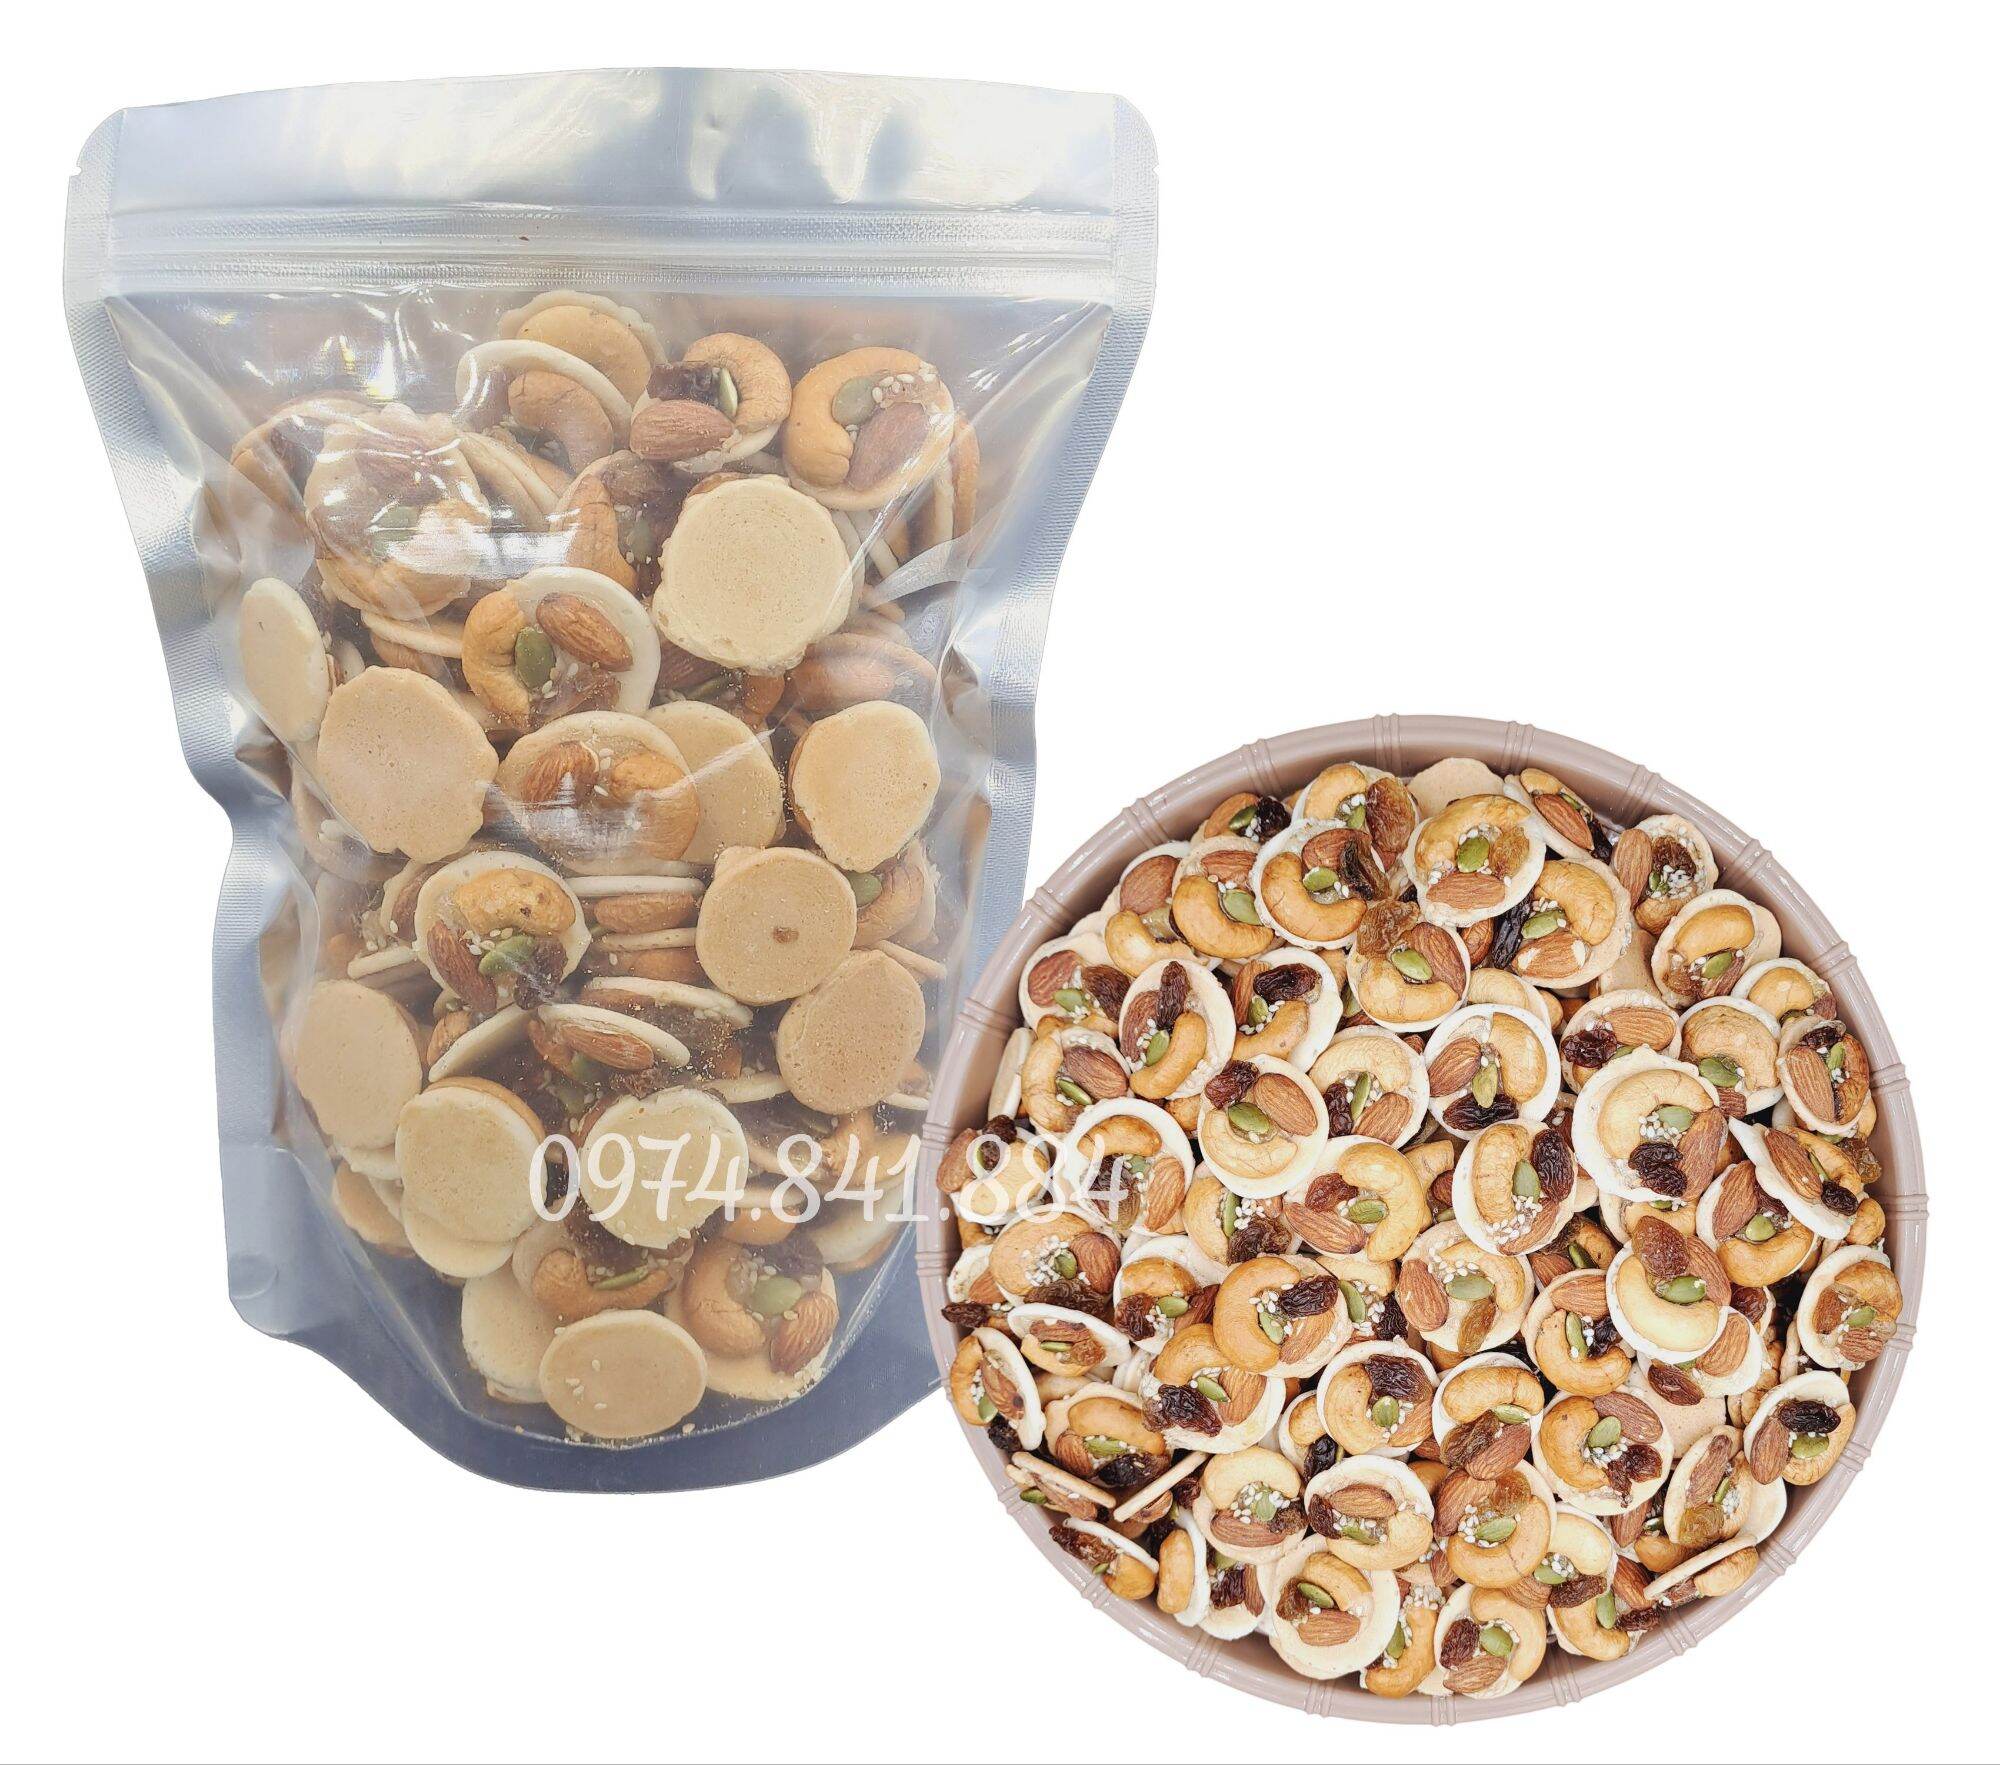 1kg bánh đồng tiền mix các loại hạt (hạt điều hạnh nhân nho mè)- đồ ăn vặt - bách hóa online uy tín